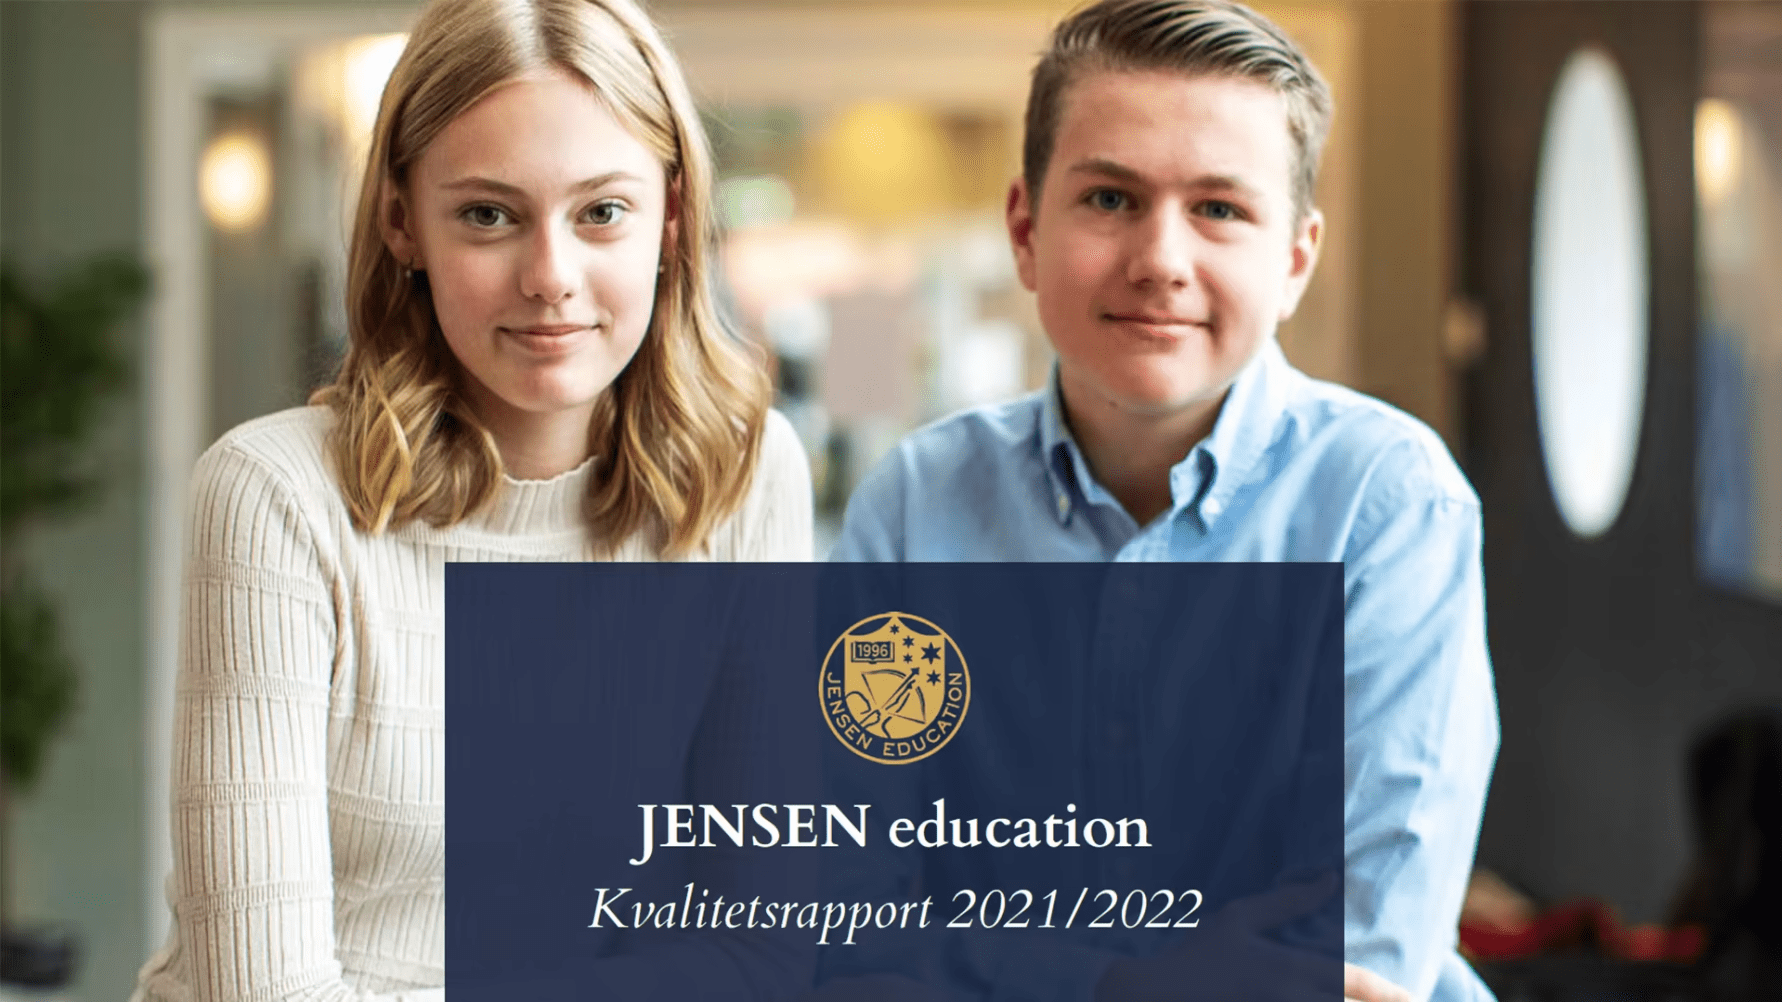 JENSENs kvalitetsrapport för education läsåret 2021/2022